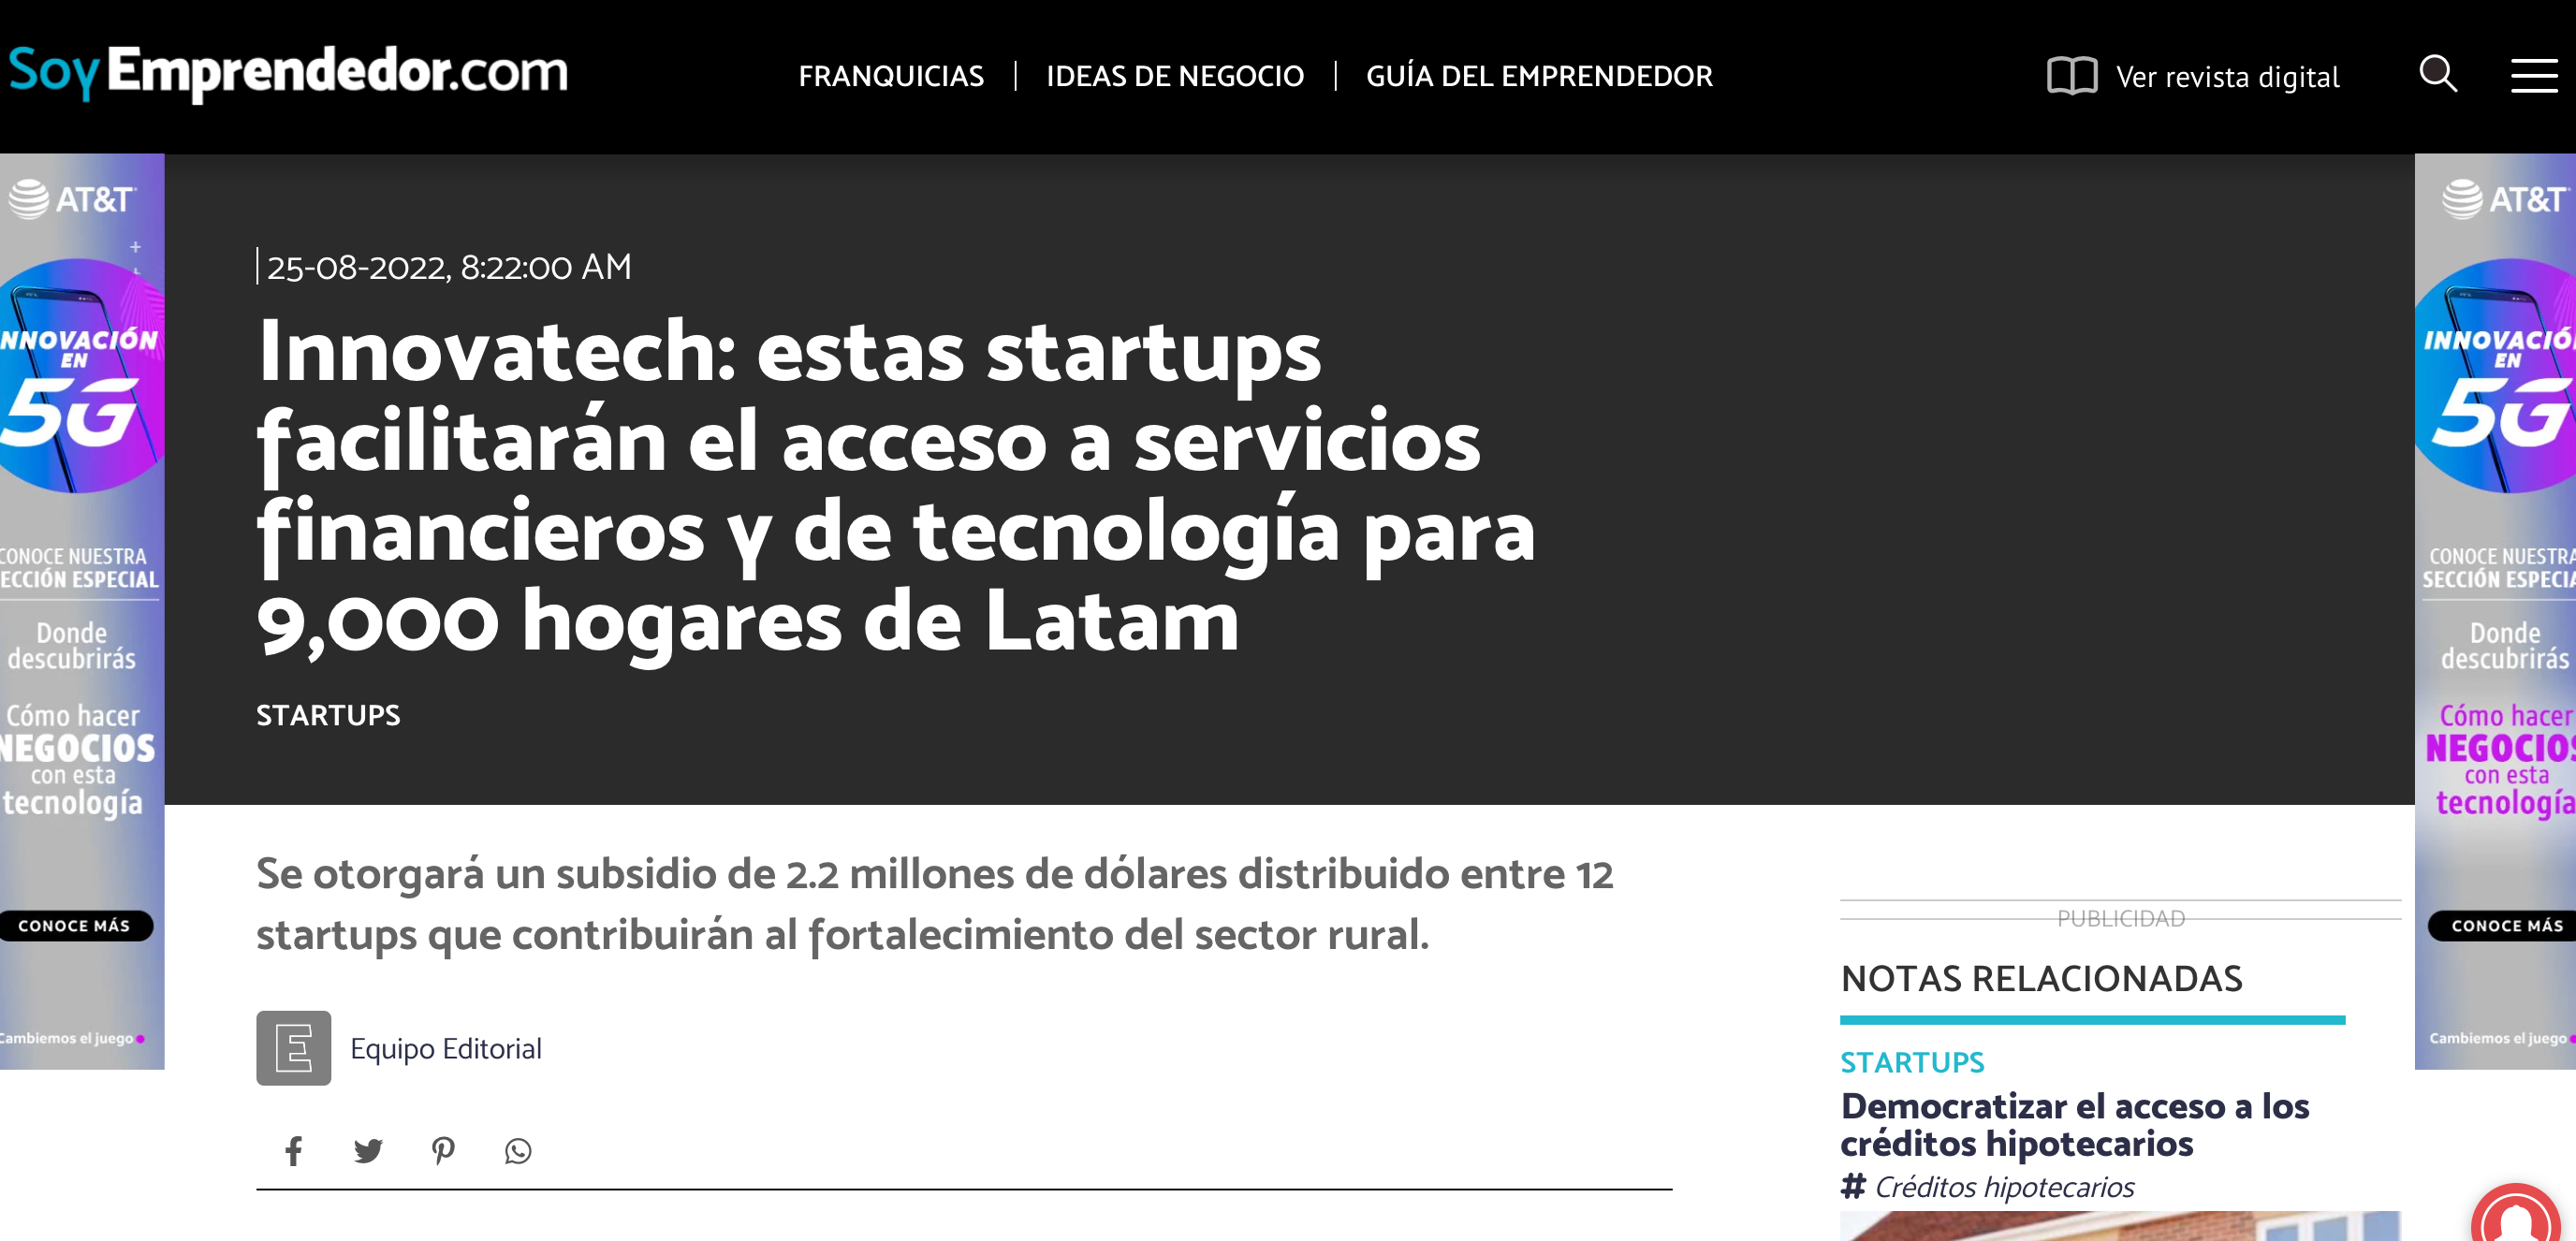 IMIX dentro de las 12 startups facilitarán el acceso a servicios financieros en Latam